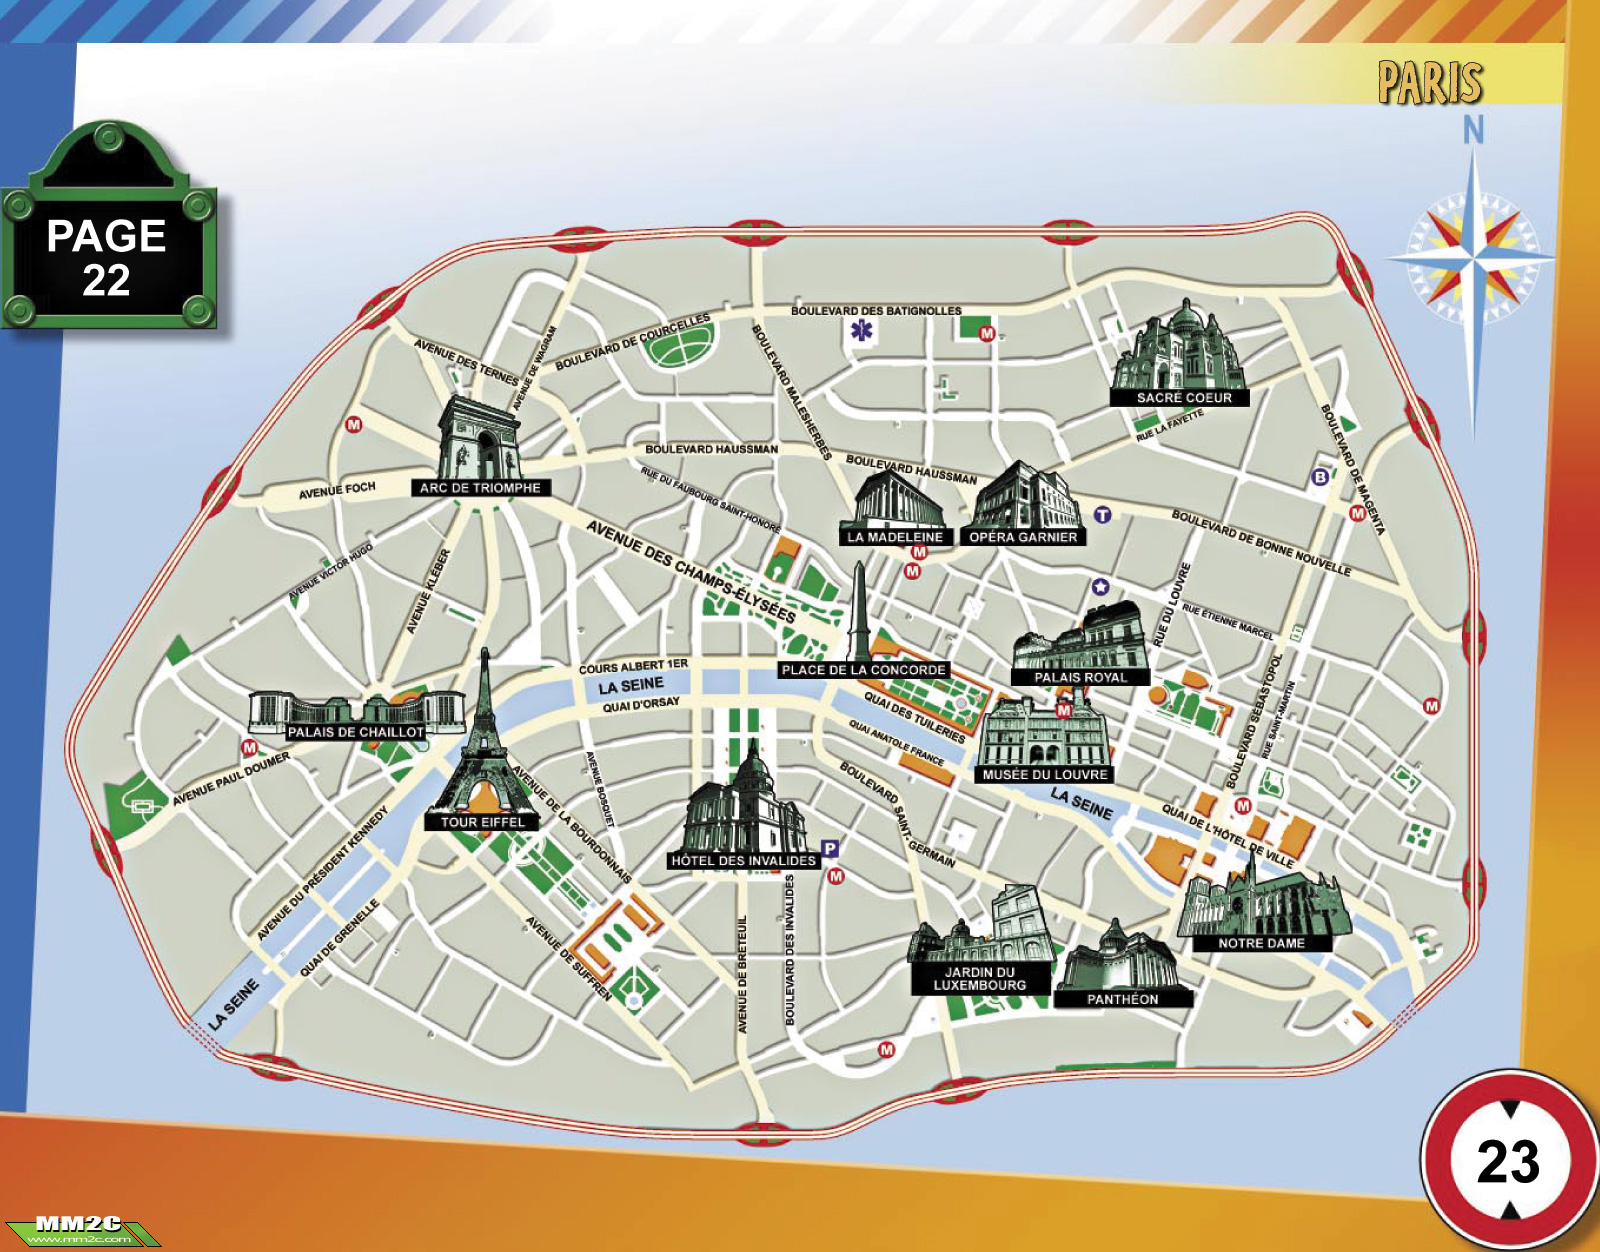 hiparis offline map of paris france